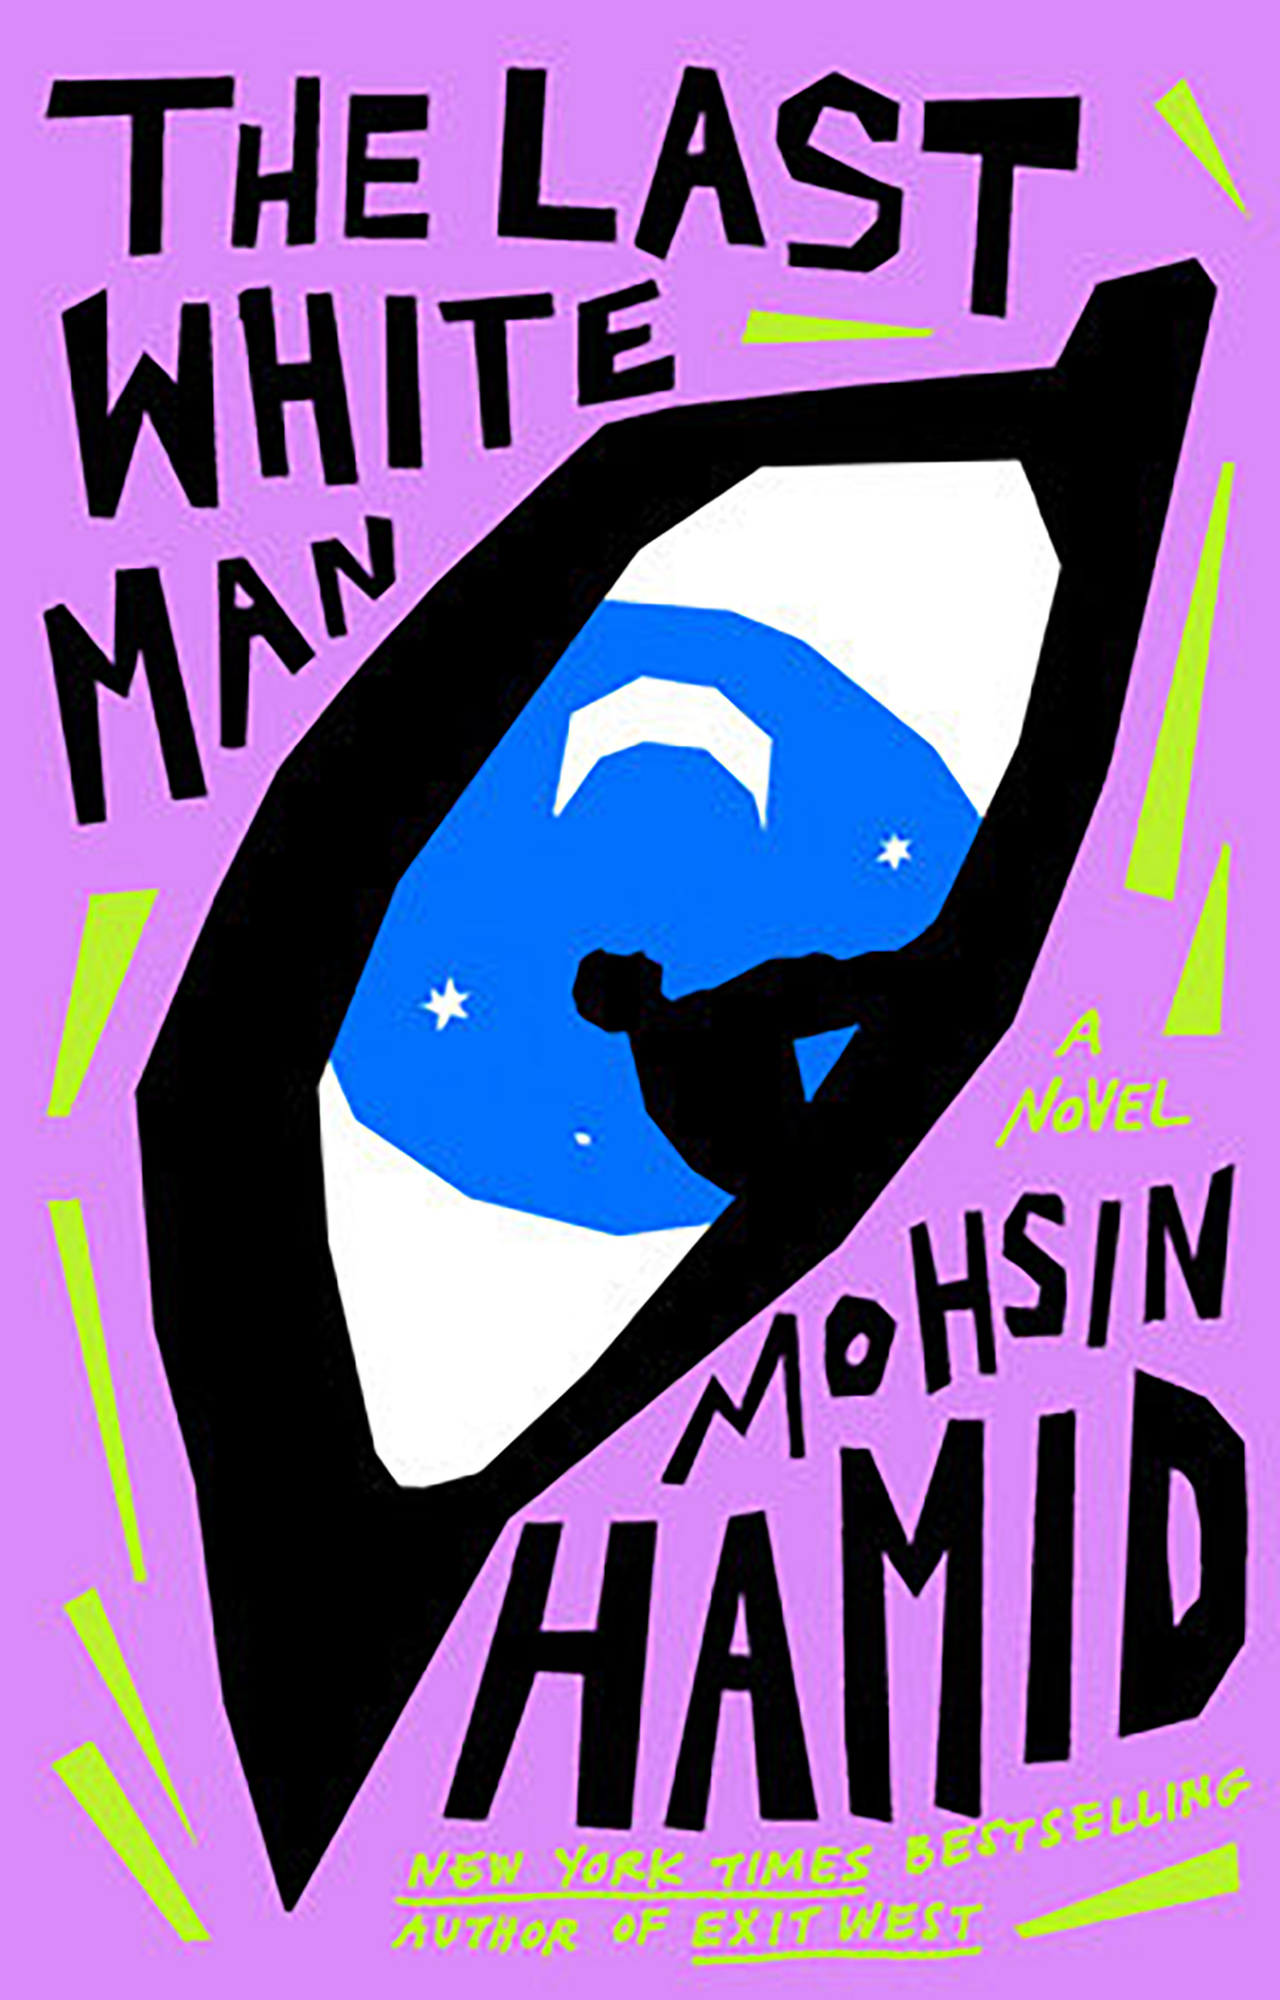 Mohsin Hamids The Last White pic